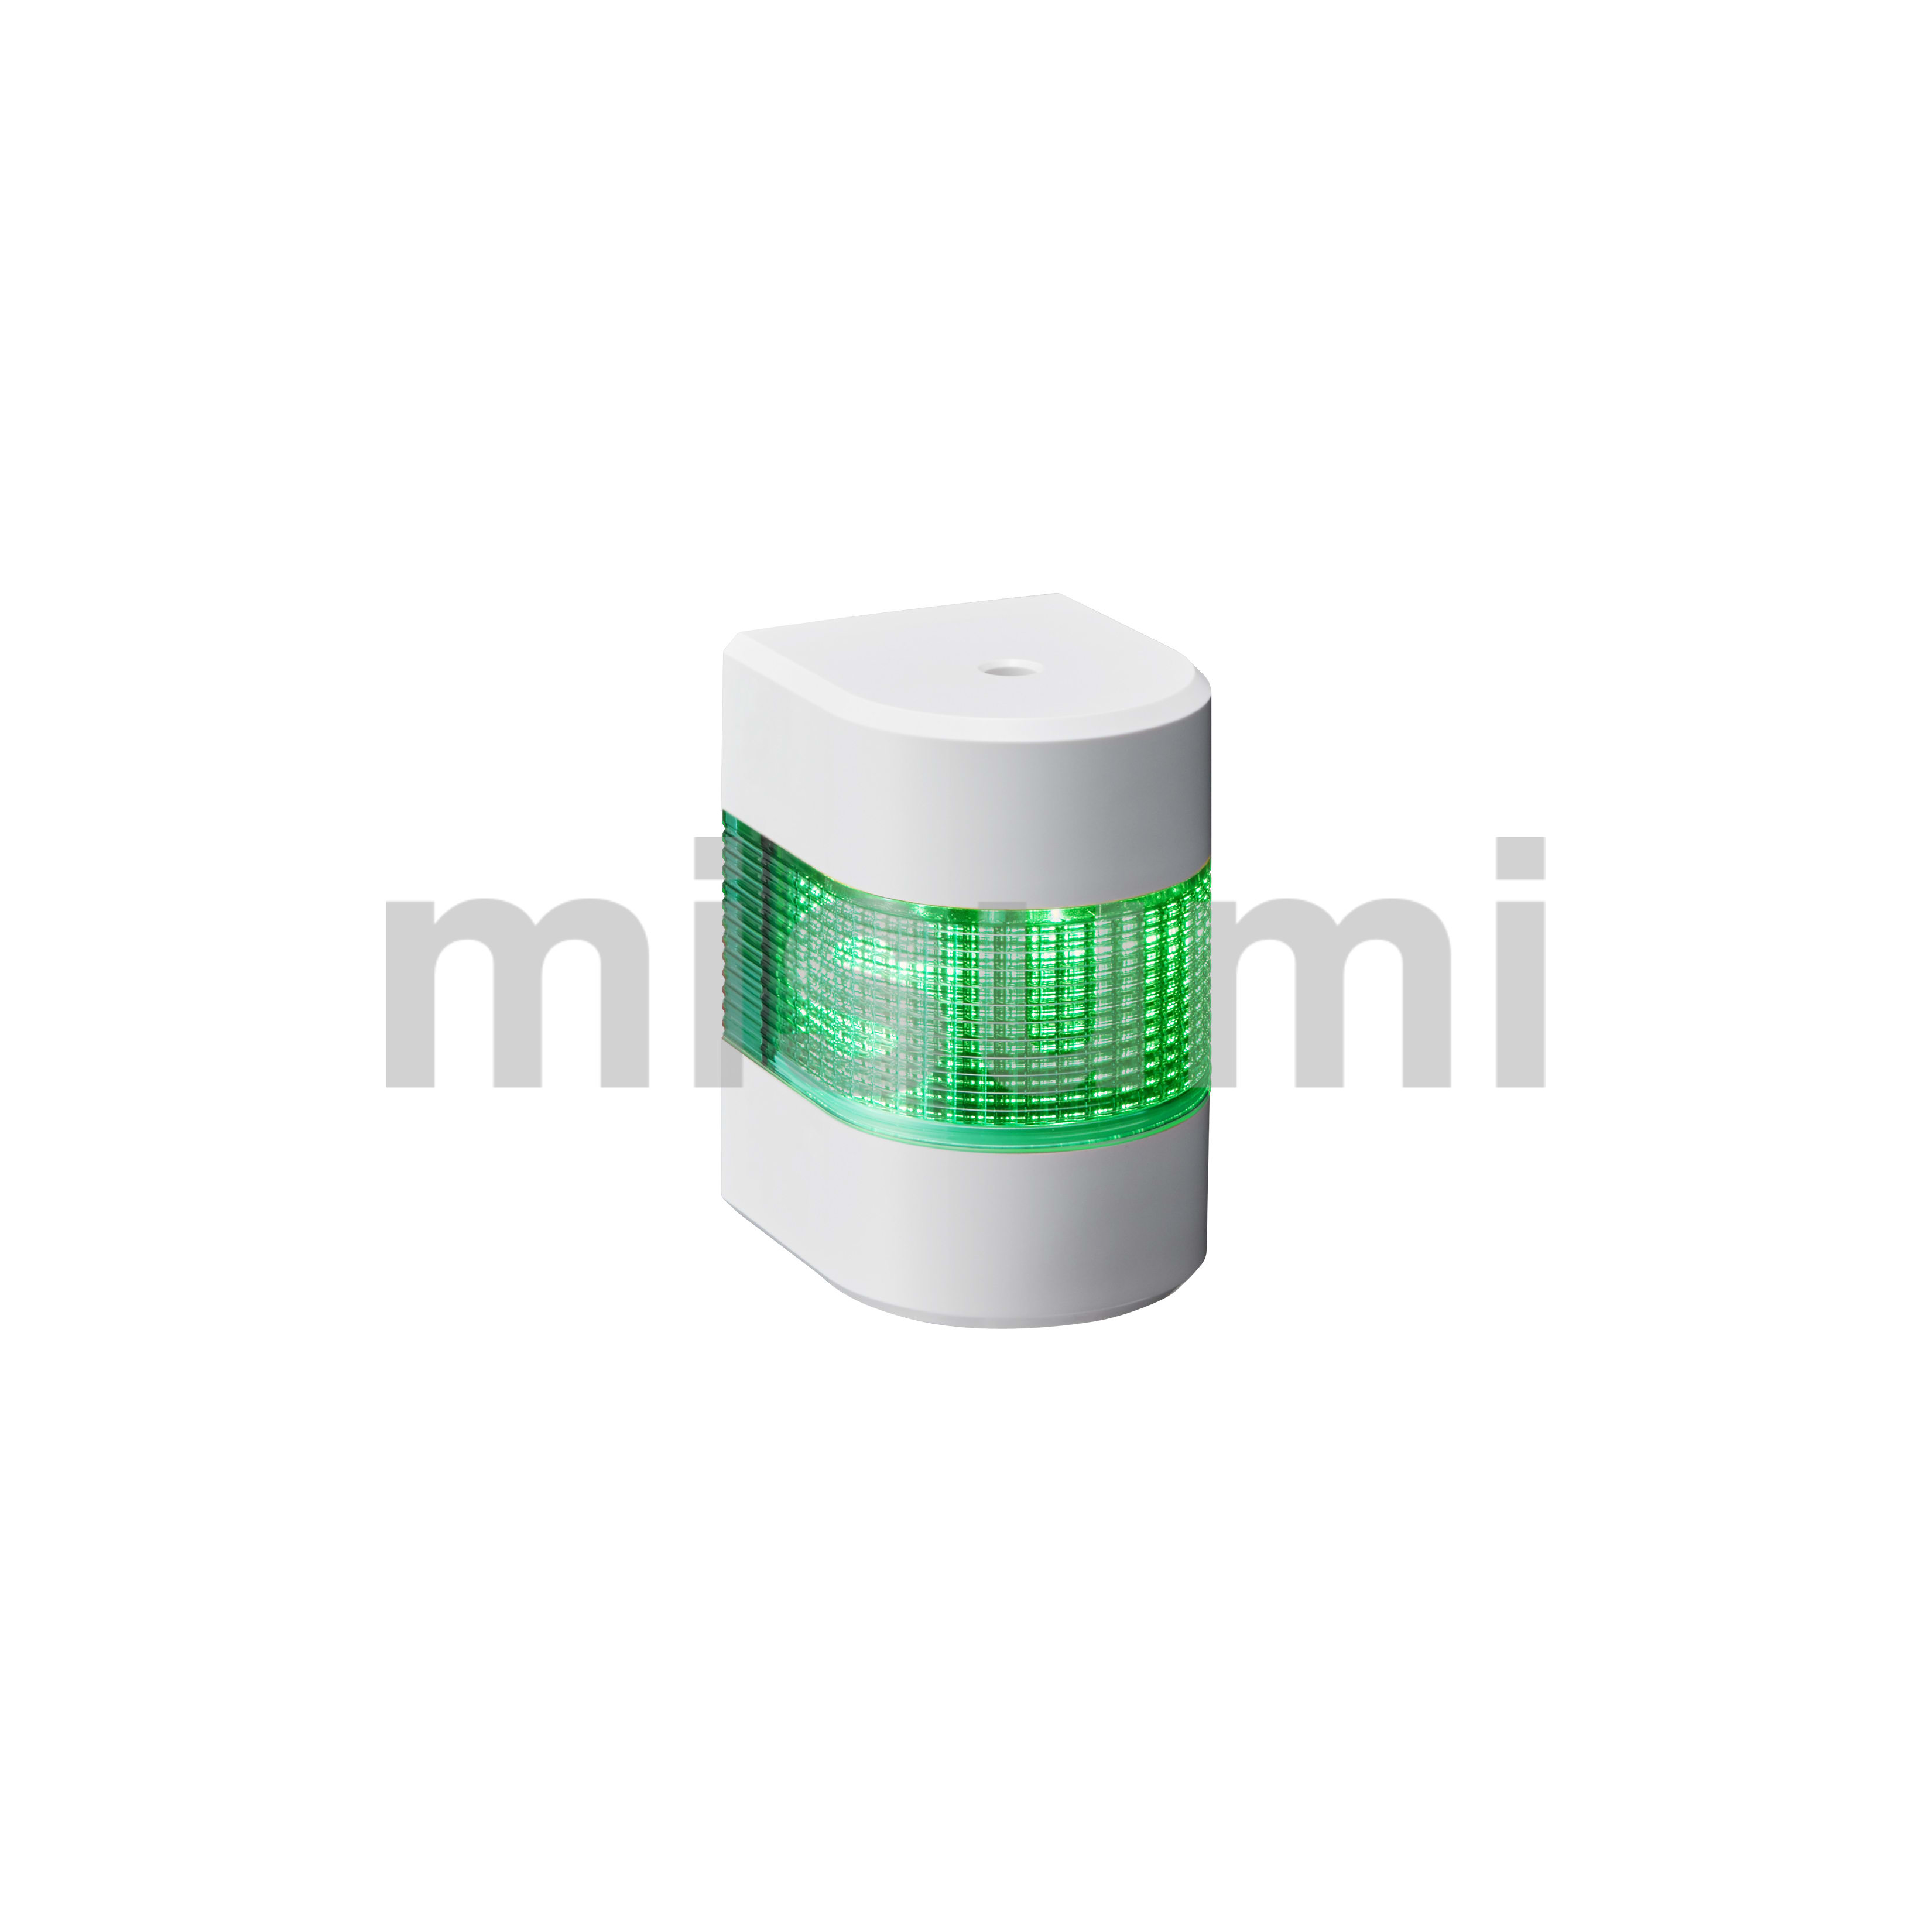 LED壁面取付け積層信号灯 パトライト MISUMI(ミスミ)